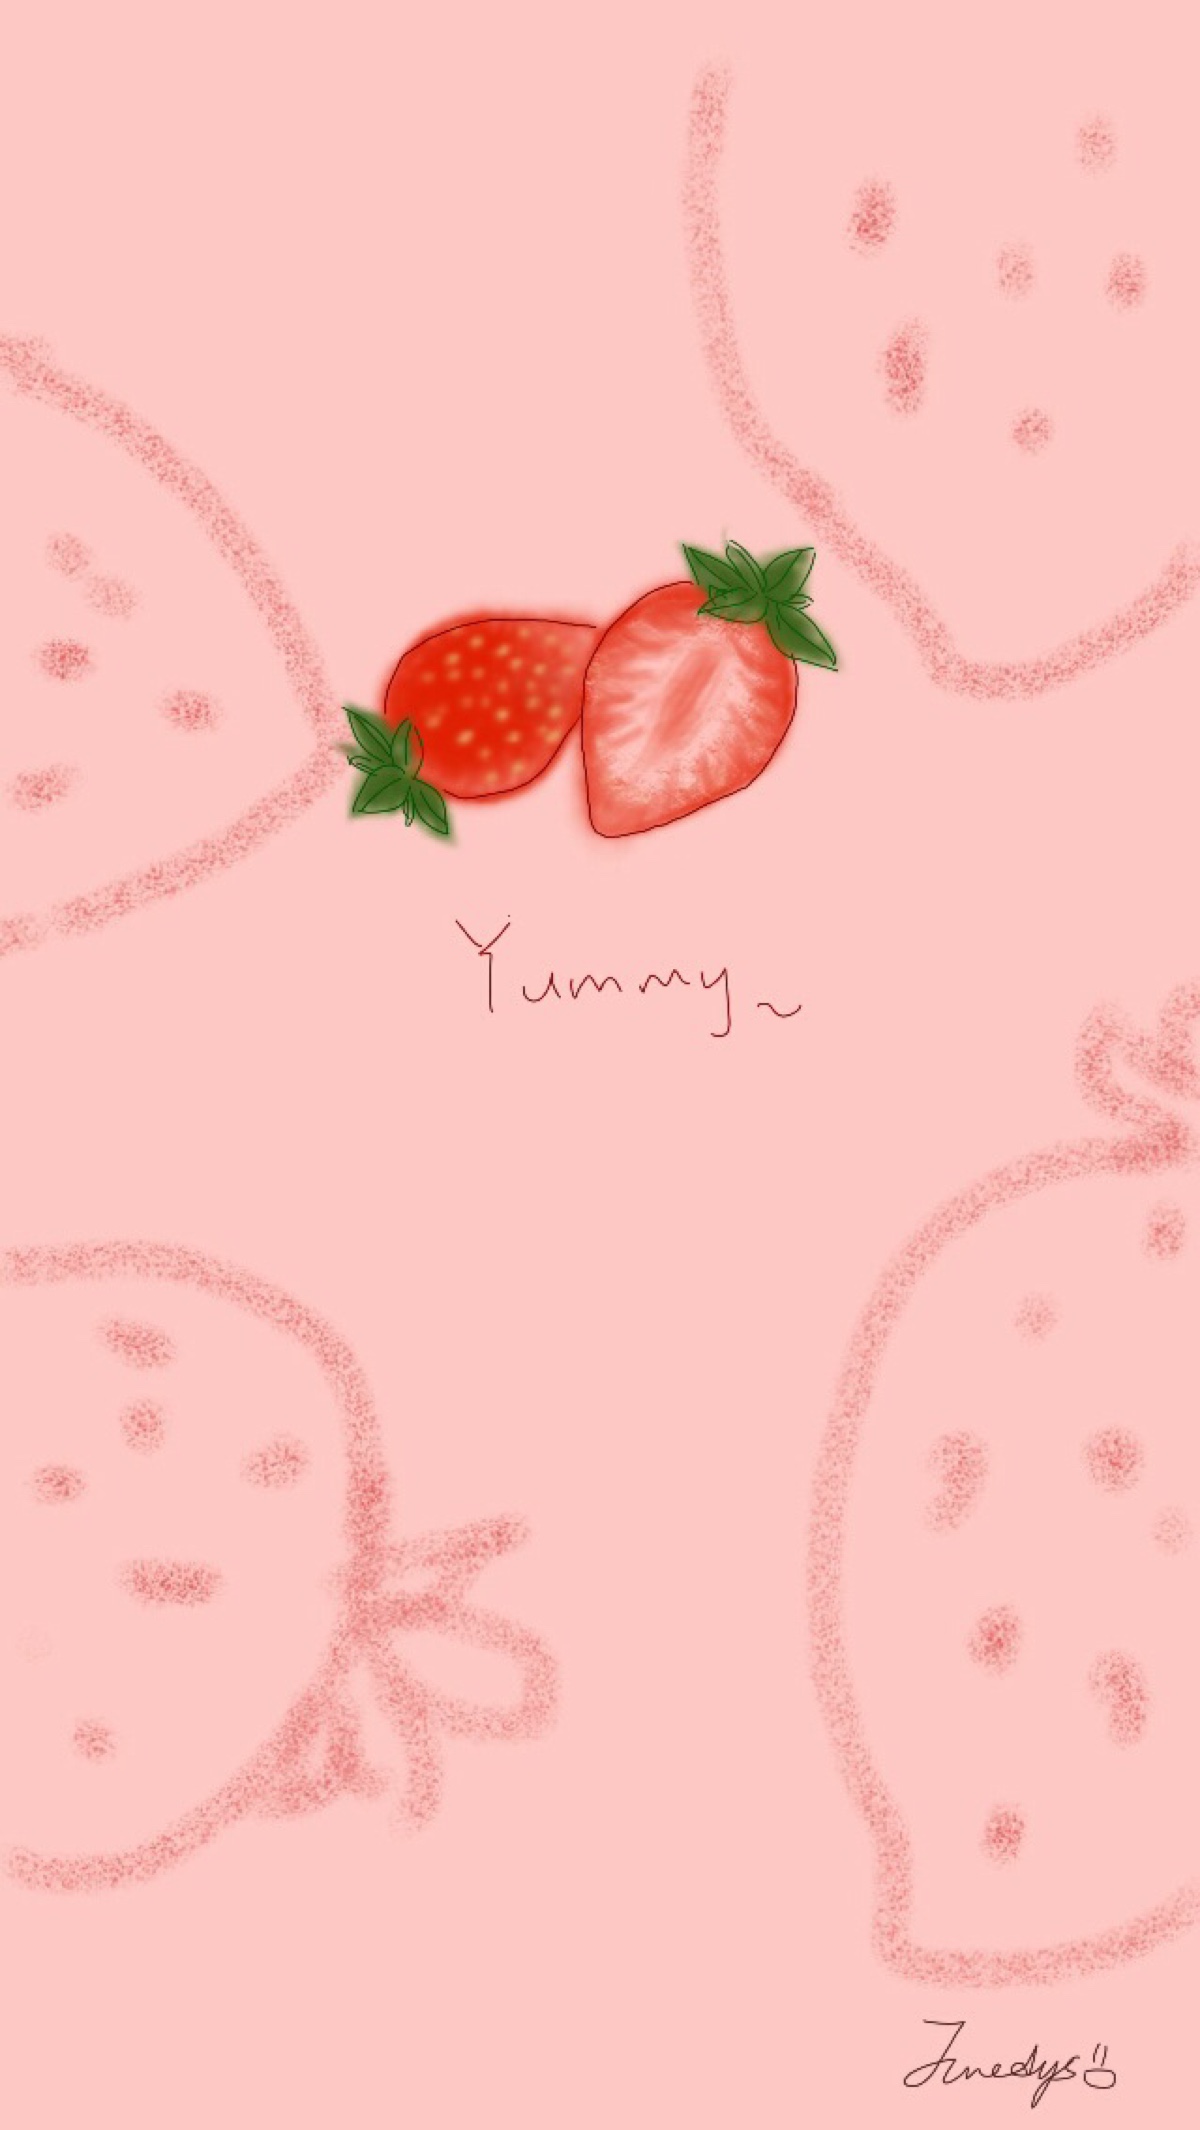 粉色背景图小草莓图片